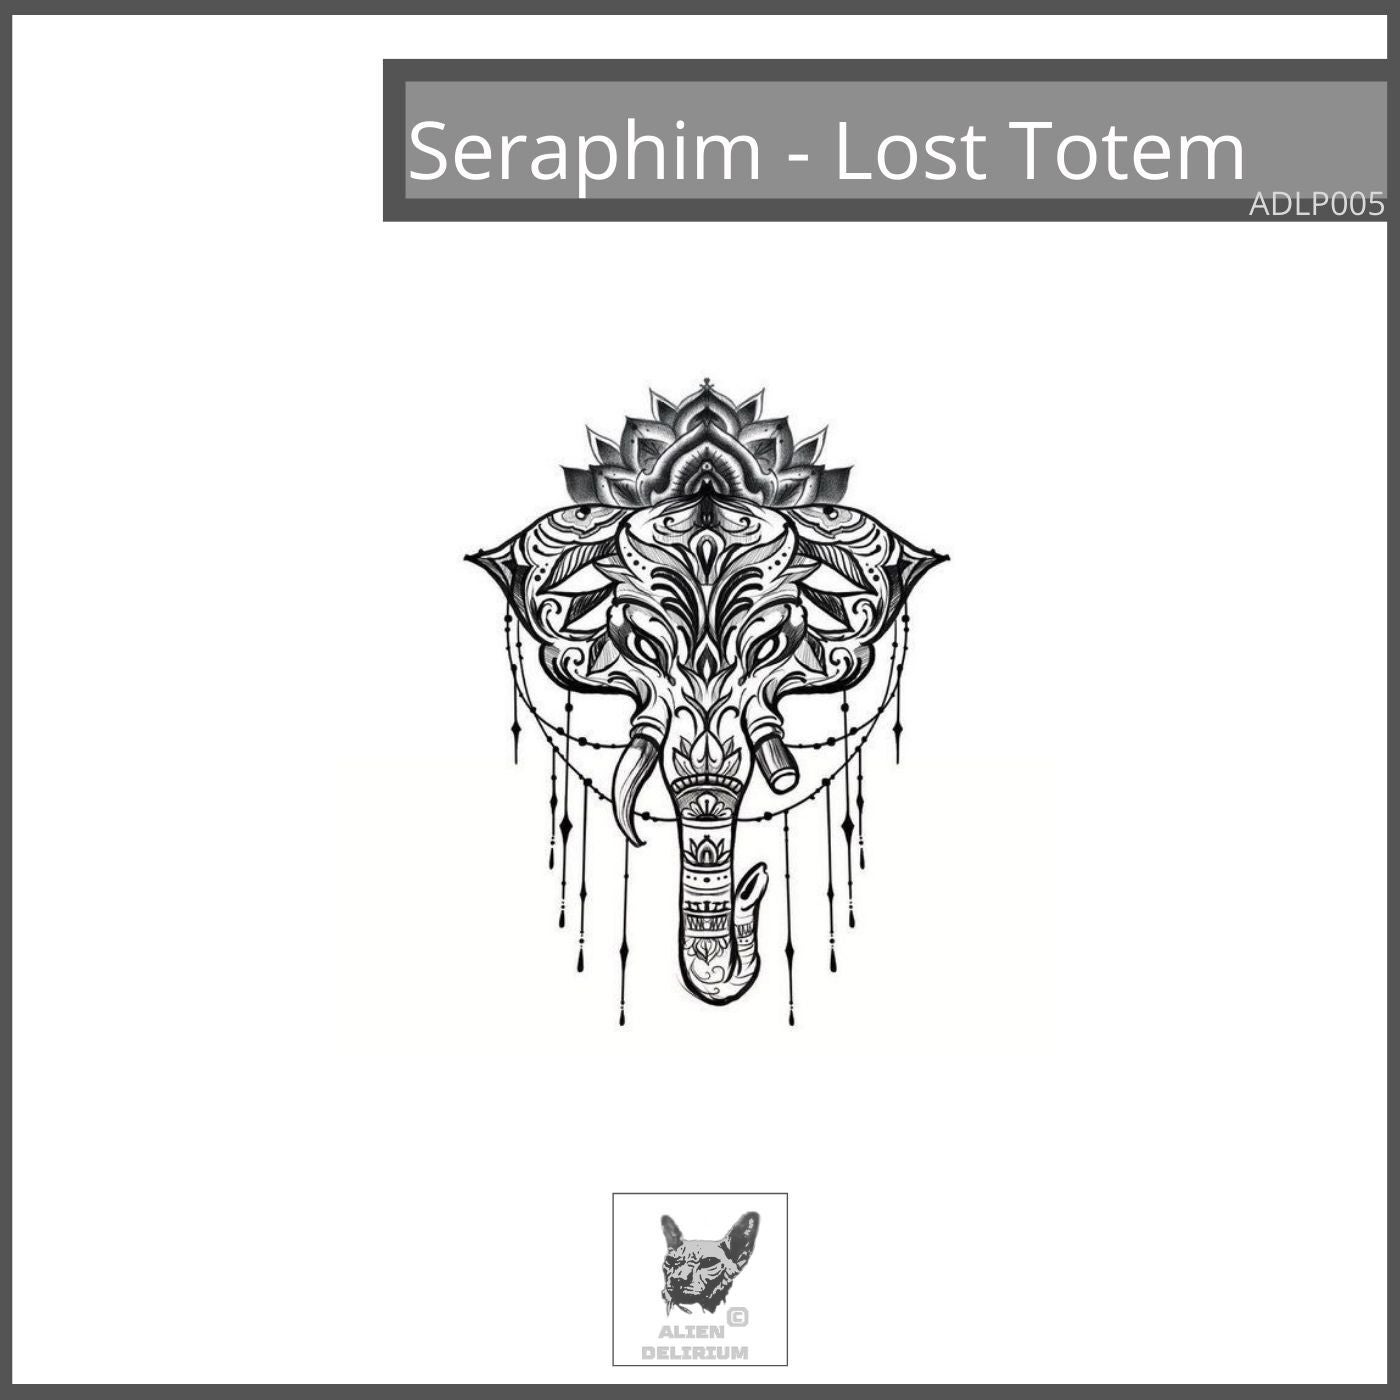 Lost Totem